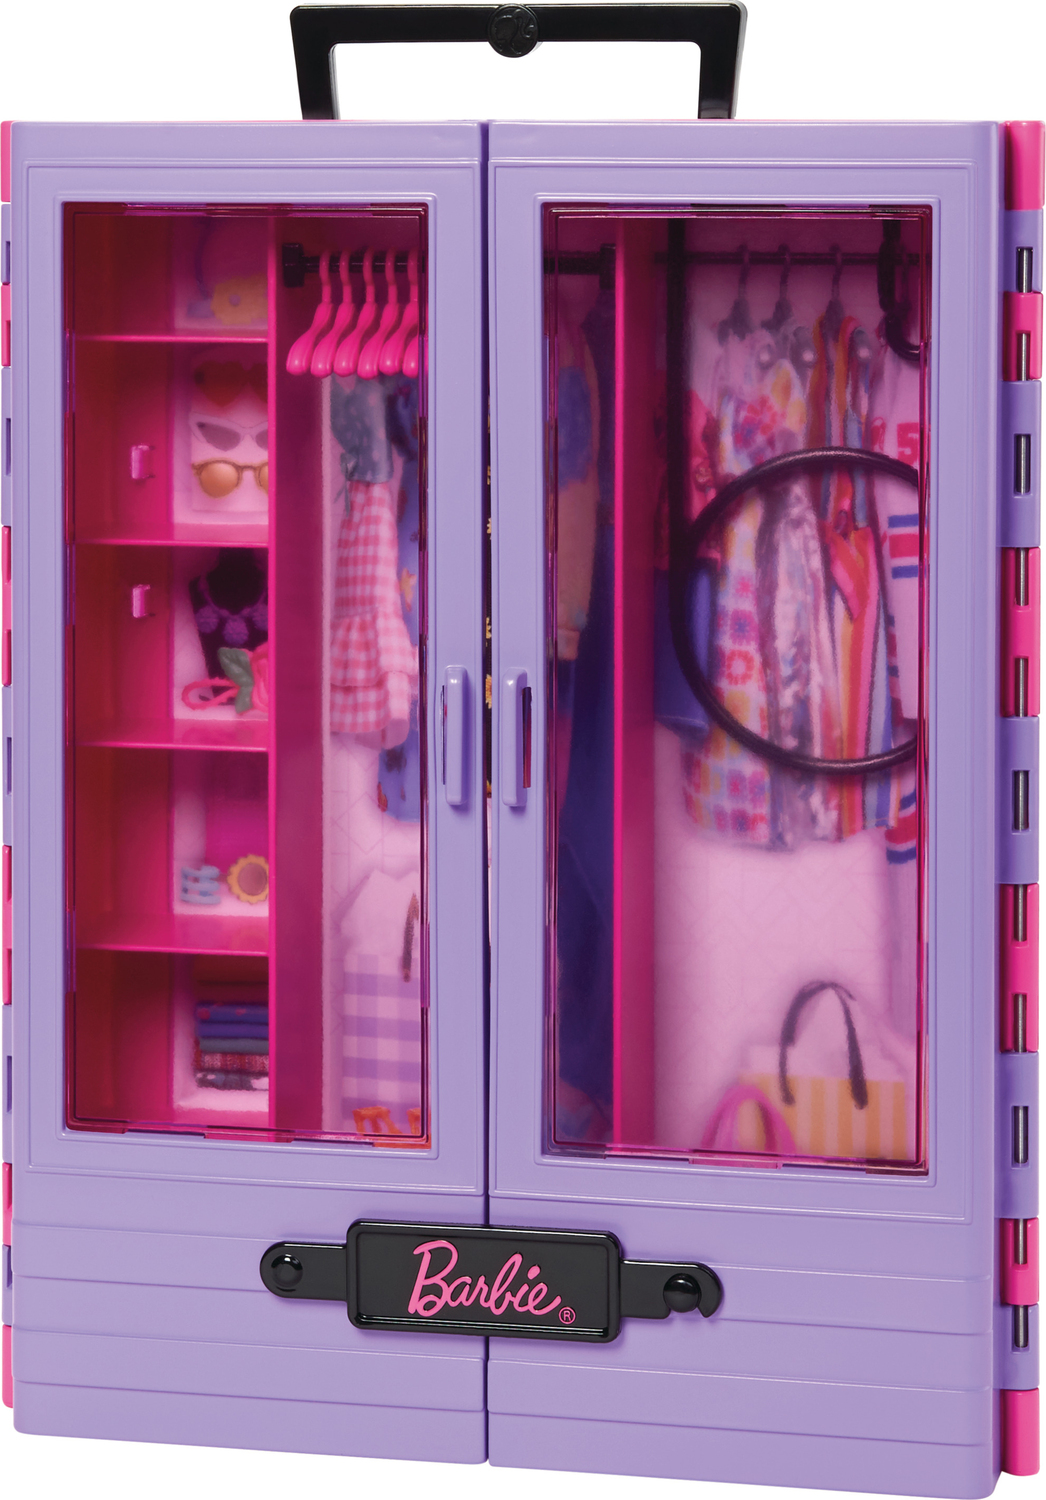 The Barbie Ultimate Closet